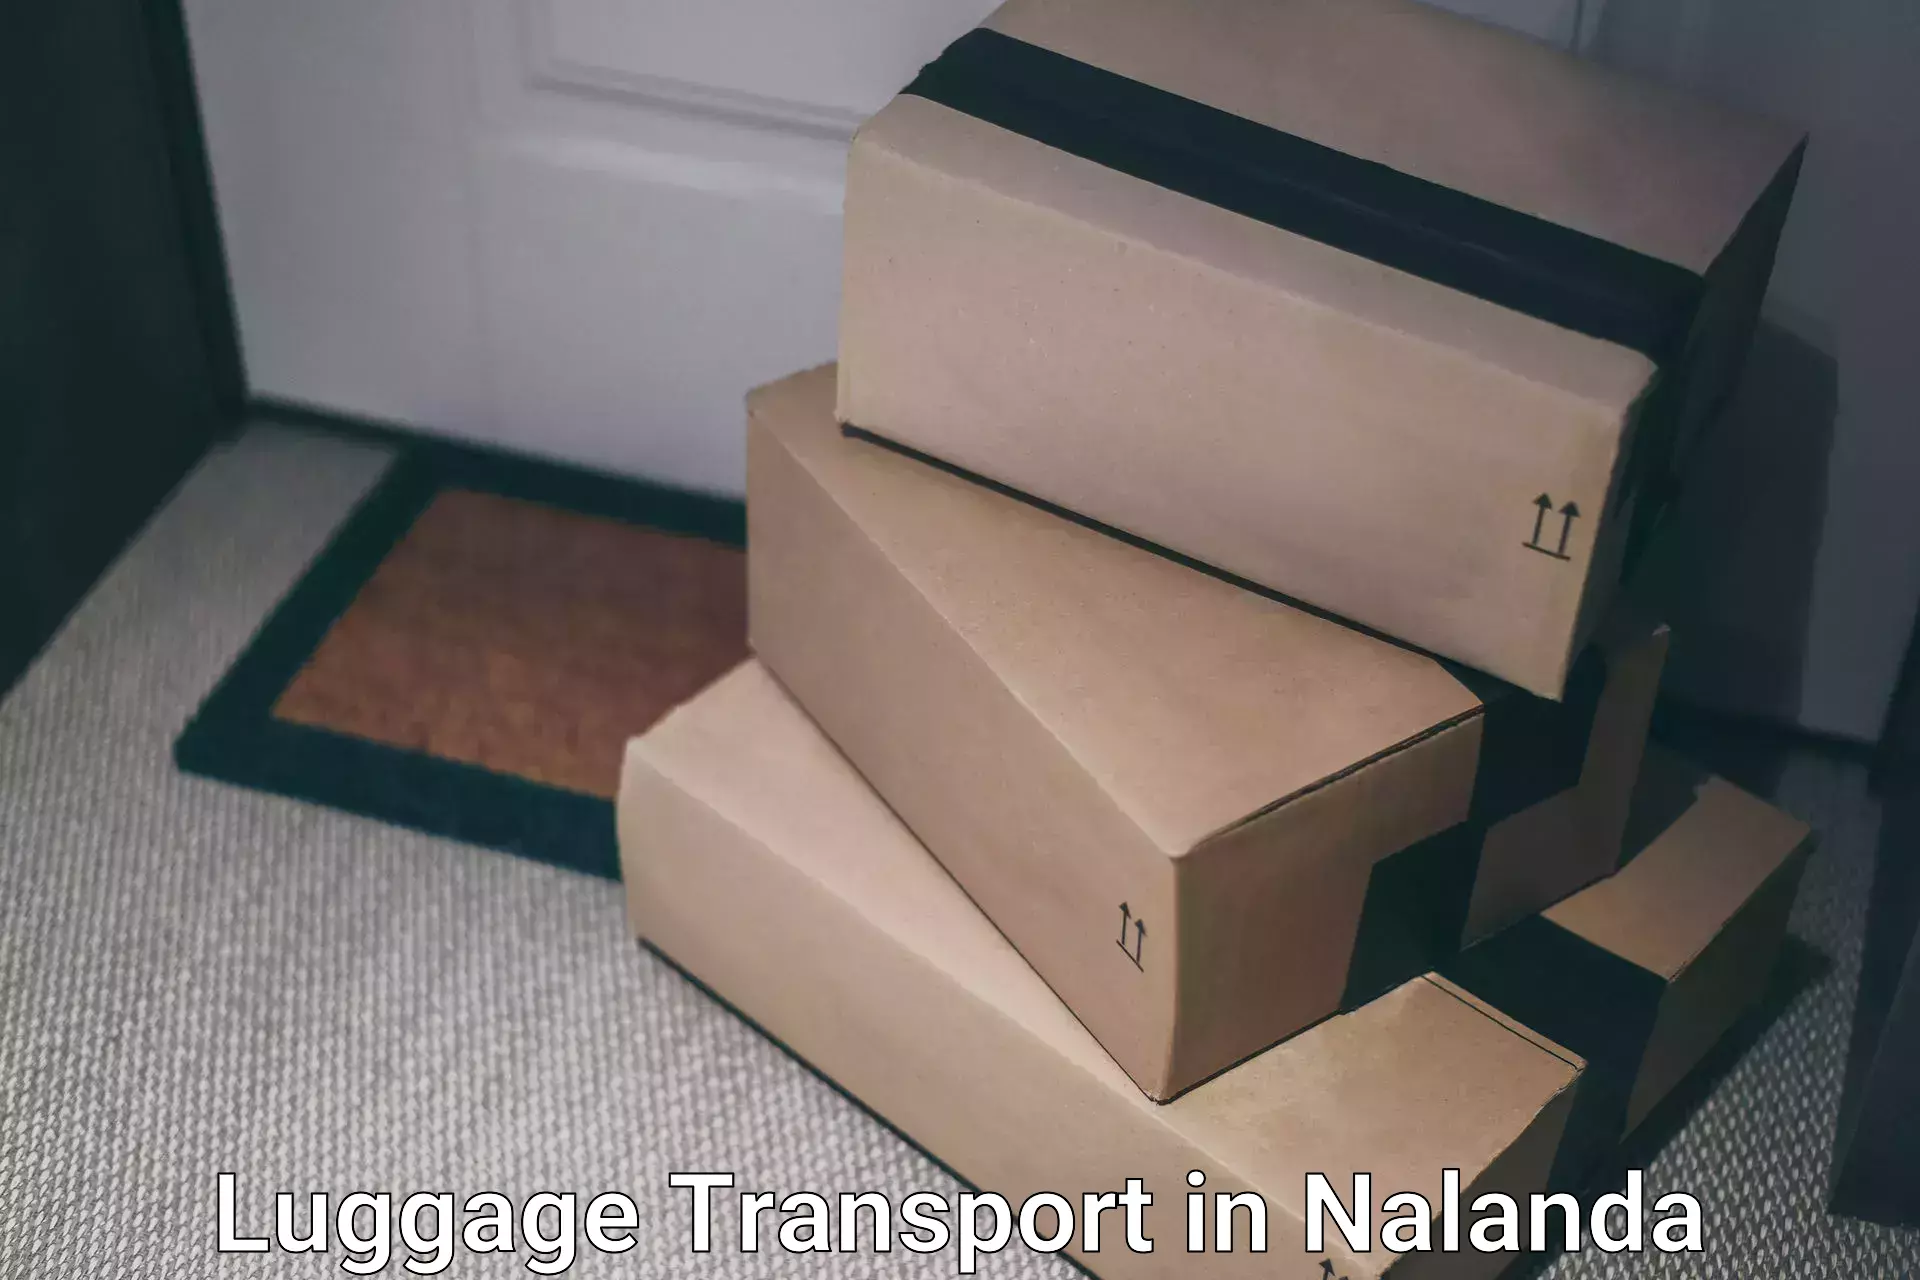 Luggage shipment logistics in Nalanda